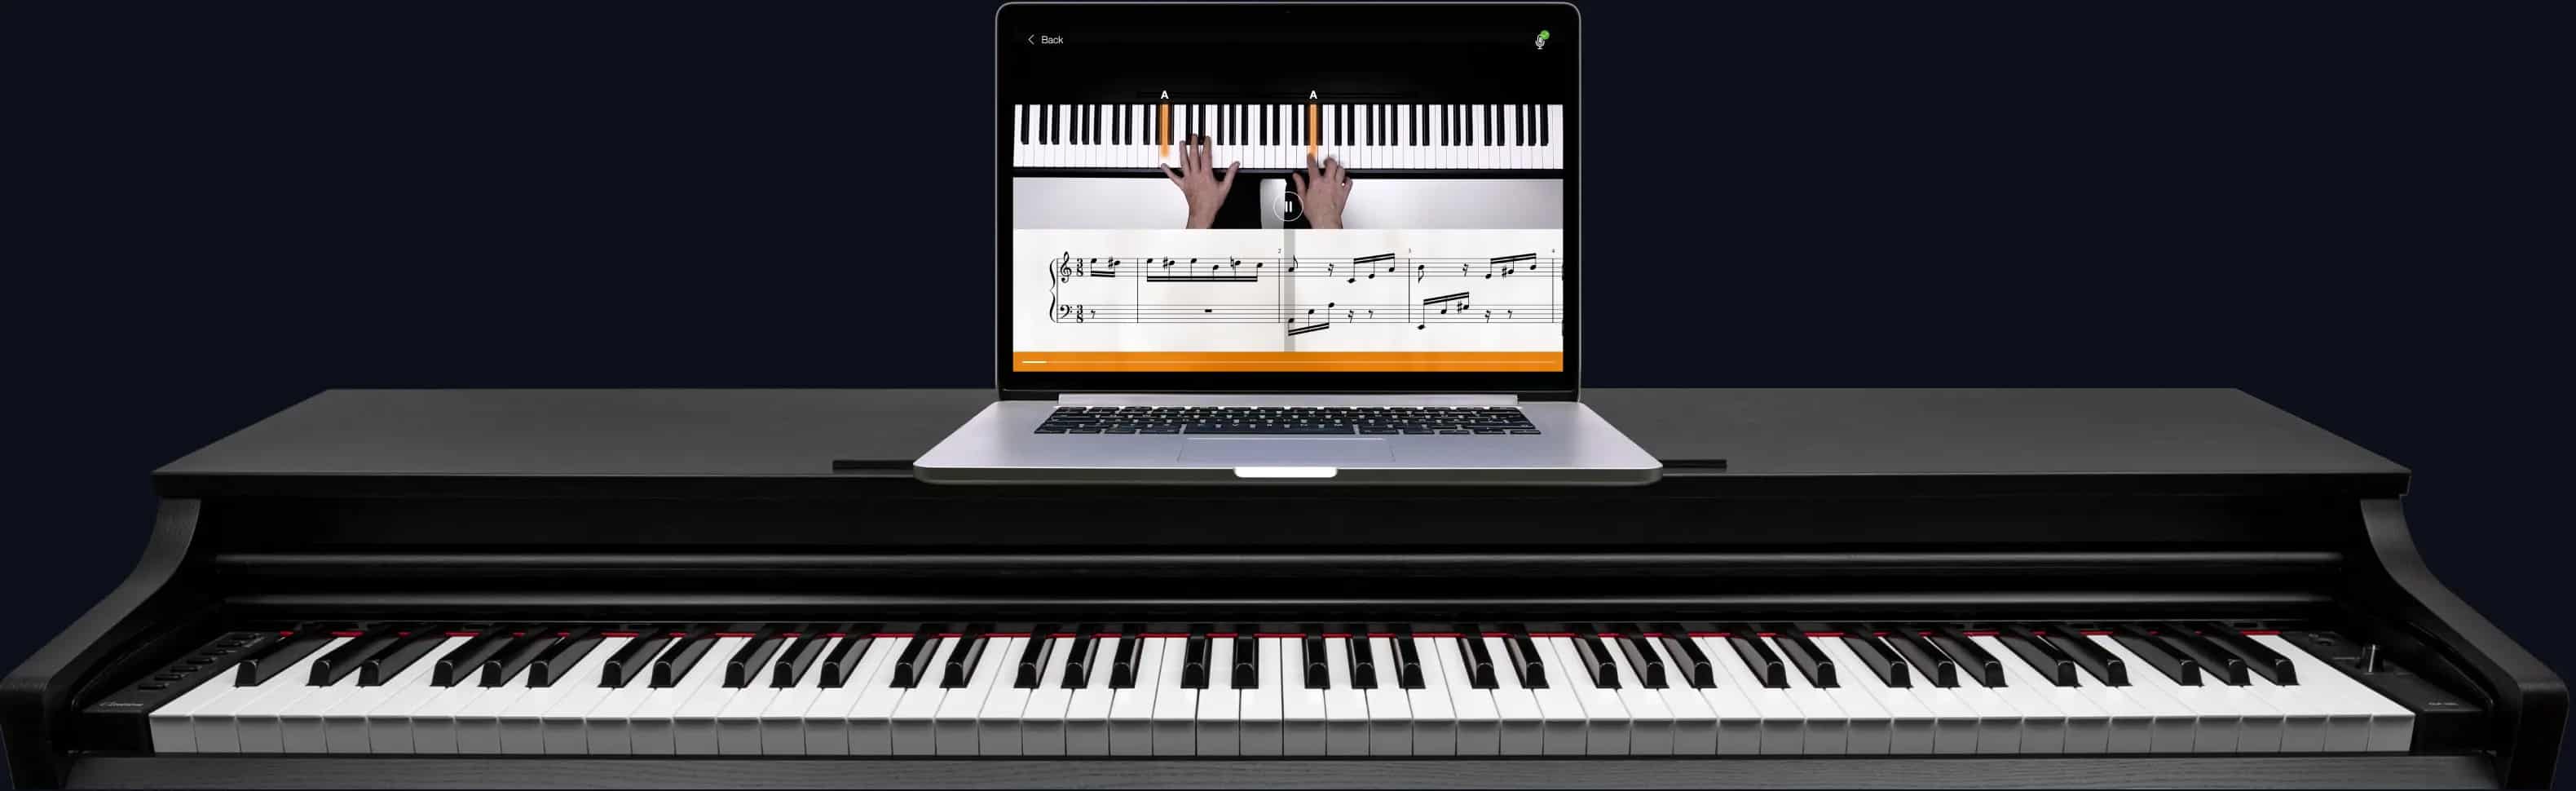 Pour l'achat d'un piano Yamaha, bénéficiez d'un accès gratuit à flowkey Premium